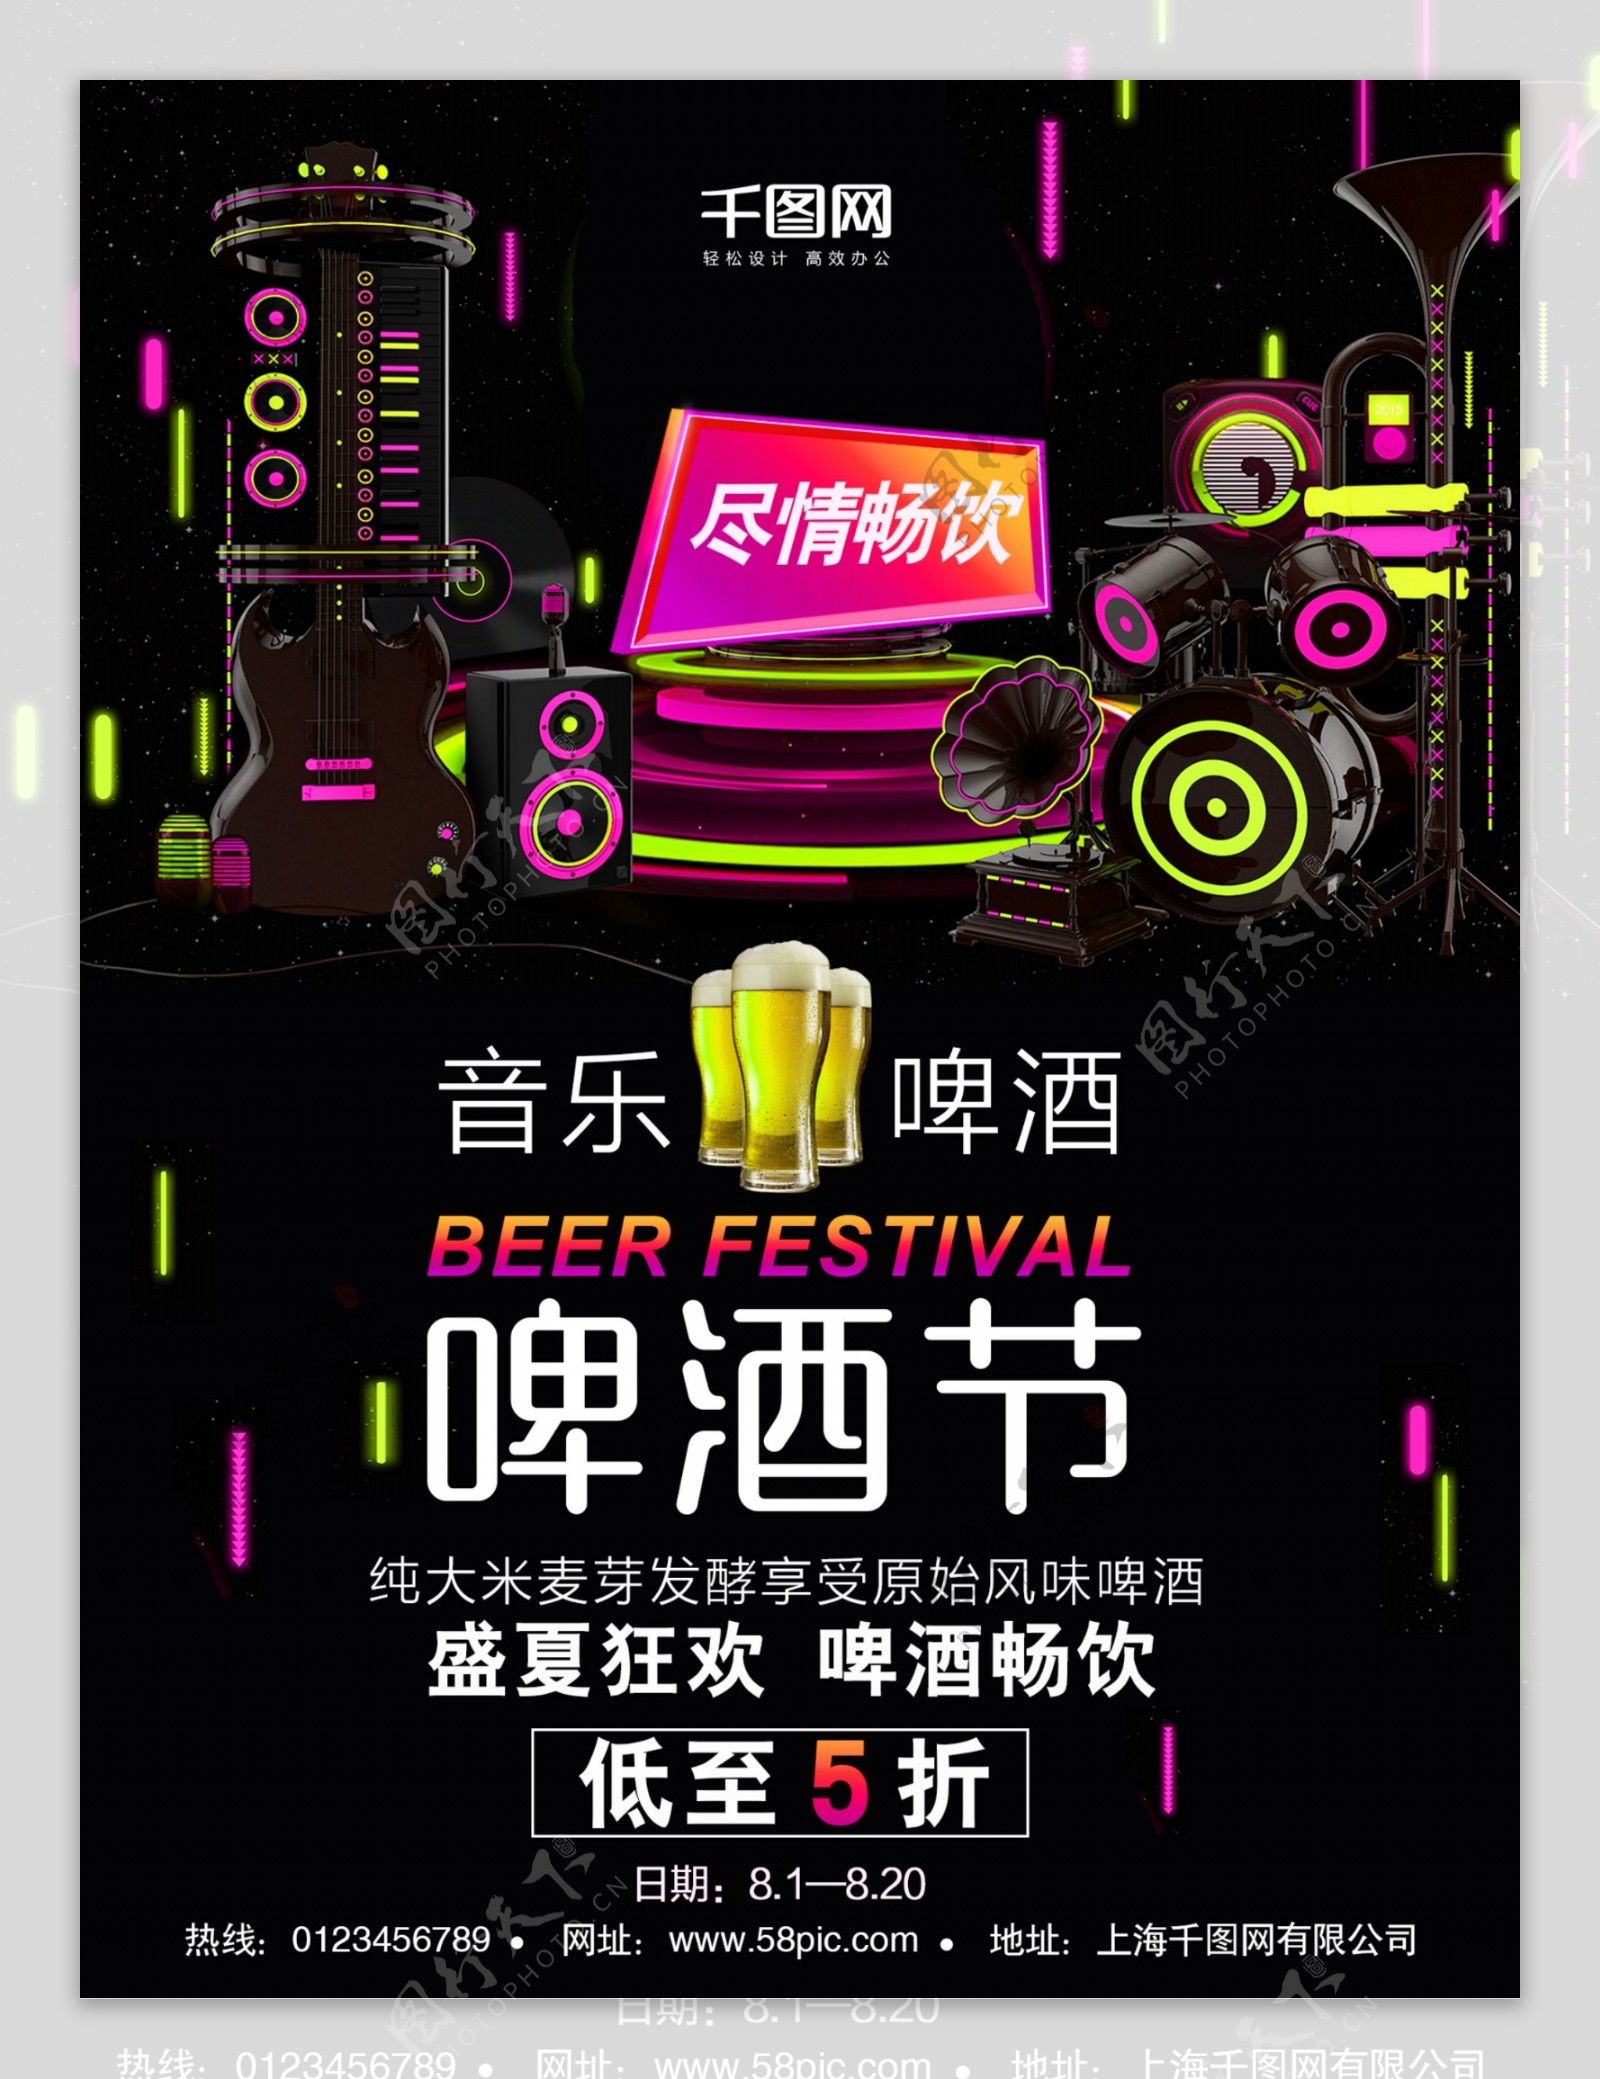 时尚炫彩音响啤酒创意简约商业海报设计